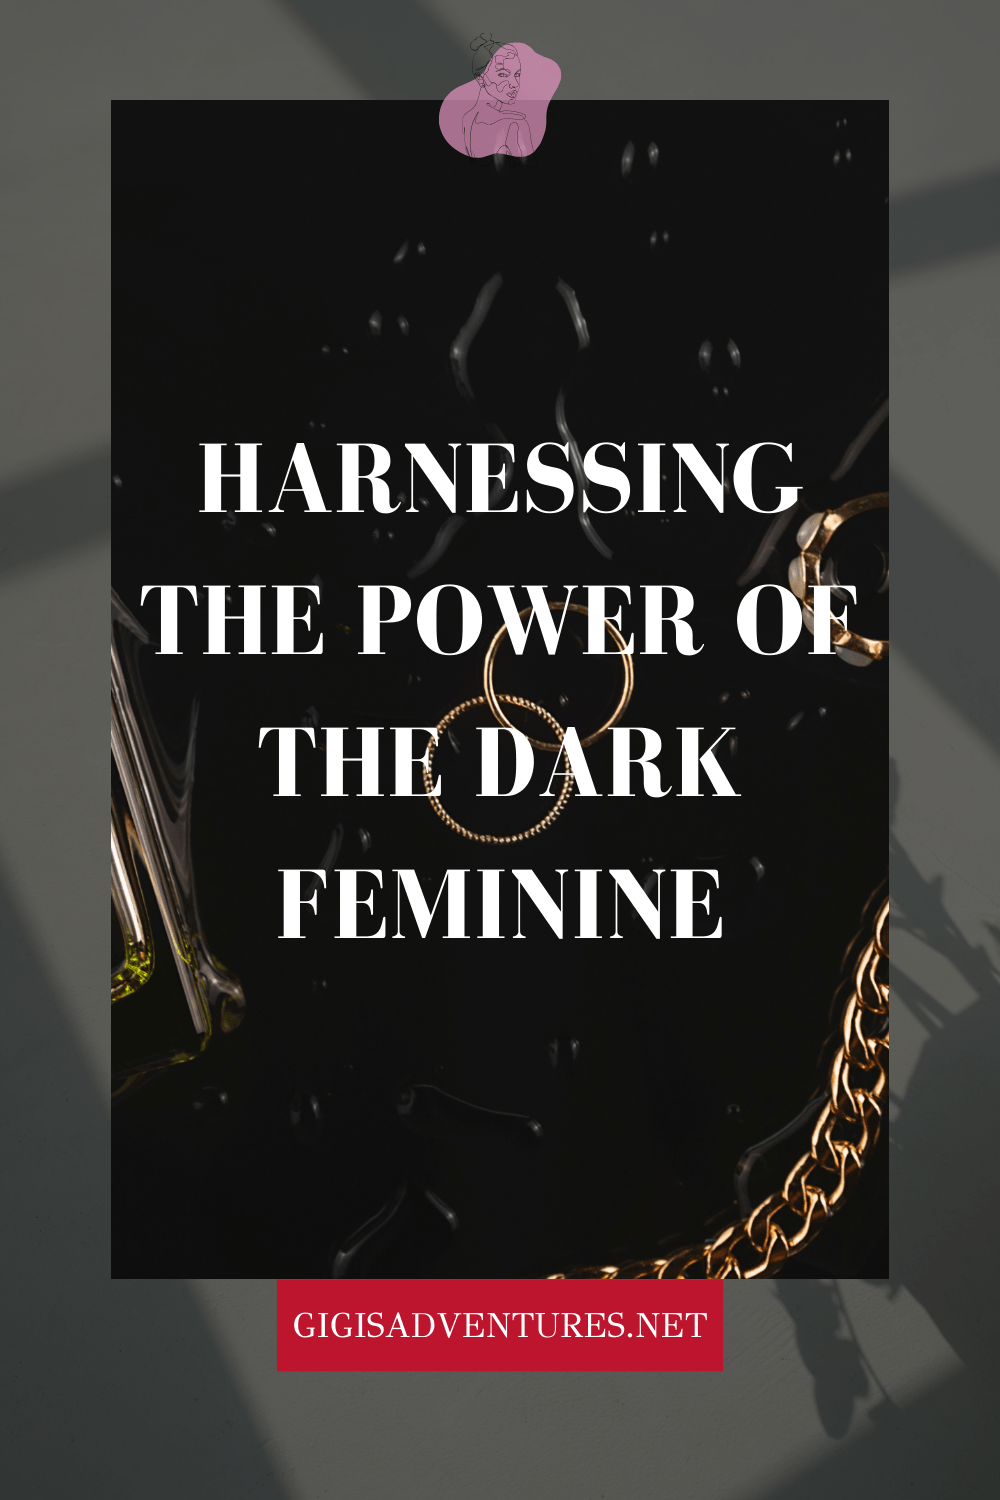 dark feminine, dark feminine energy, dark femininity,